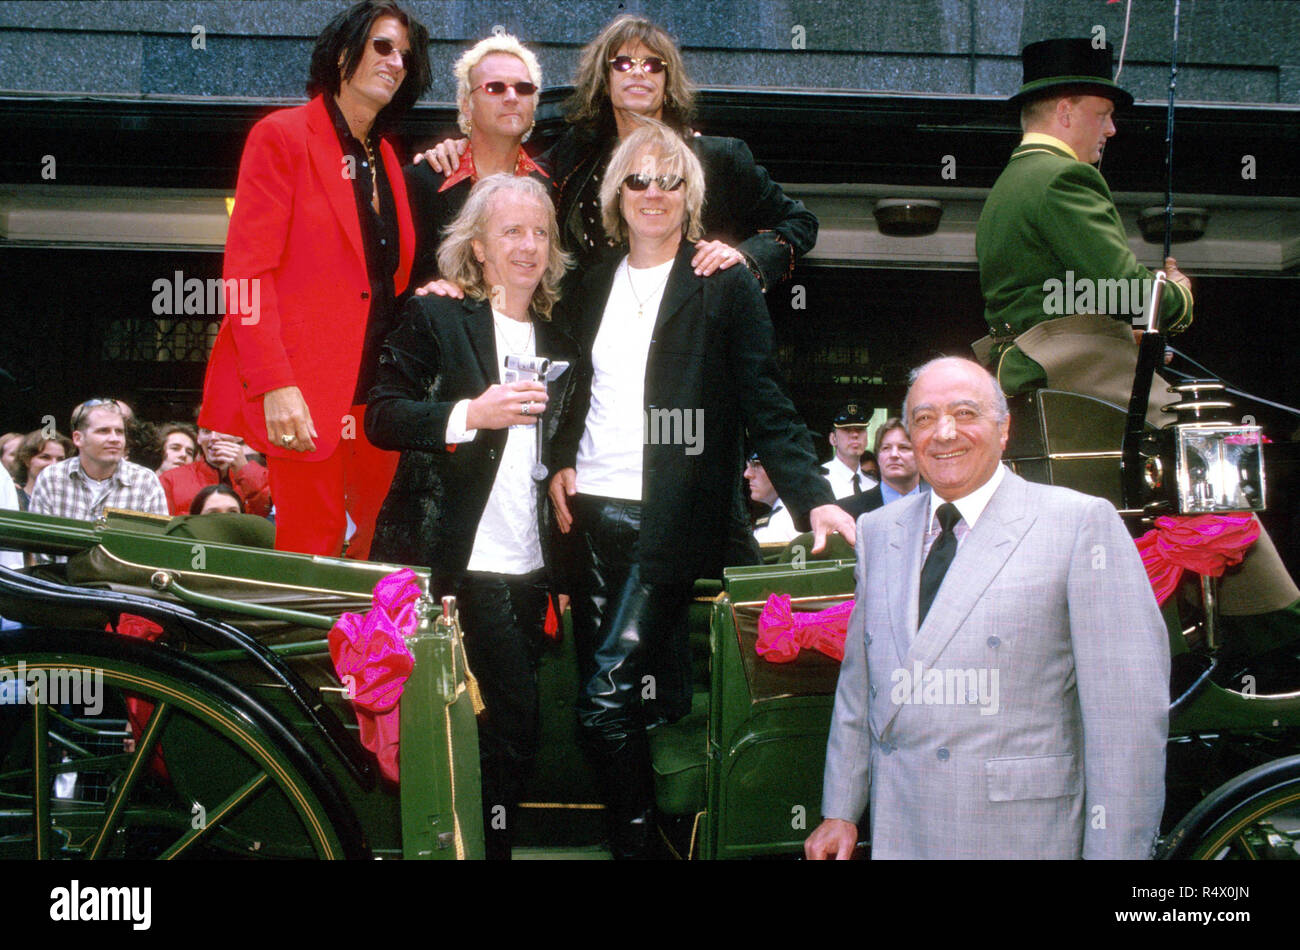 Photos d'archive. Londres. Juin 1999. Groupe de rock américain Aerosmith, avec Mohamed Al-Fayed, chez Harrods, où le groupe a annoncé leur prochaine tournée mondiale '9 vies' jouant dans 14 pays européens, plus de 28 jours. Juin 1999 portant 28 novembre 2018. LMK11-168-MO2031-281118 Monument des médias. WWW.LMKMEDIA.COM Banque D'Images